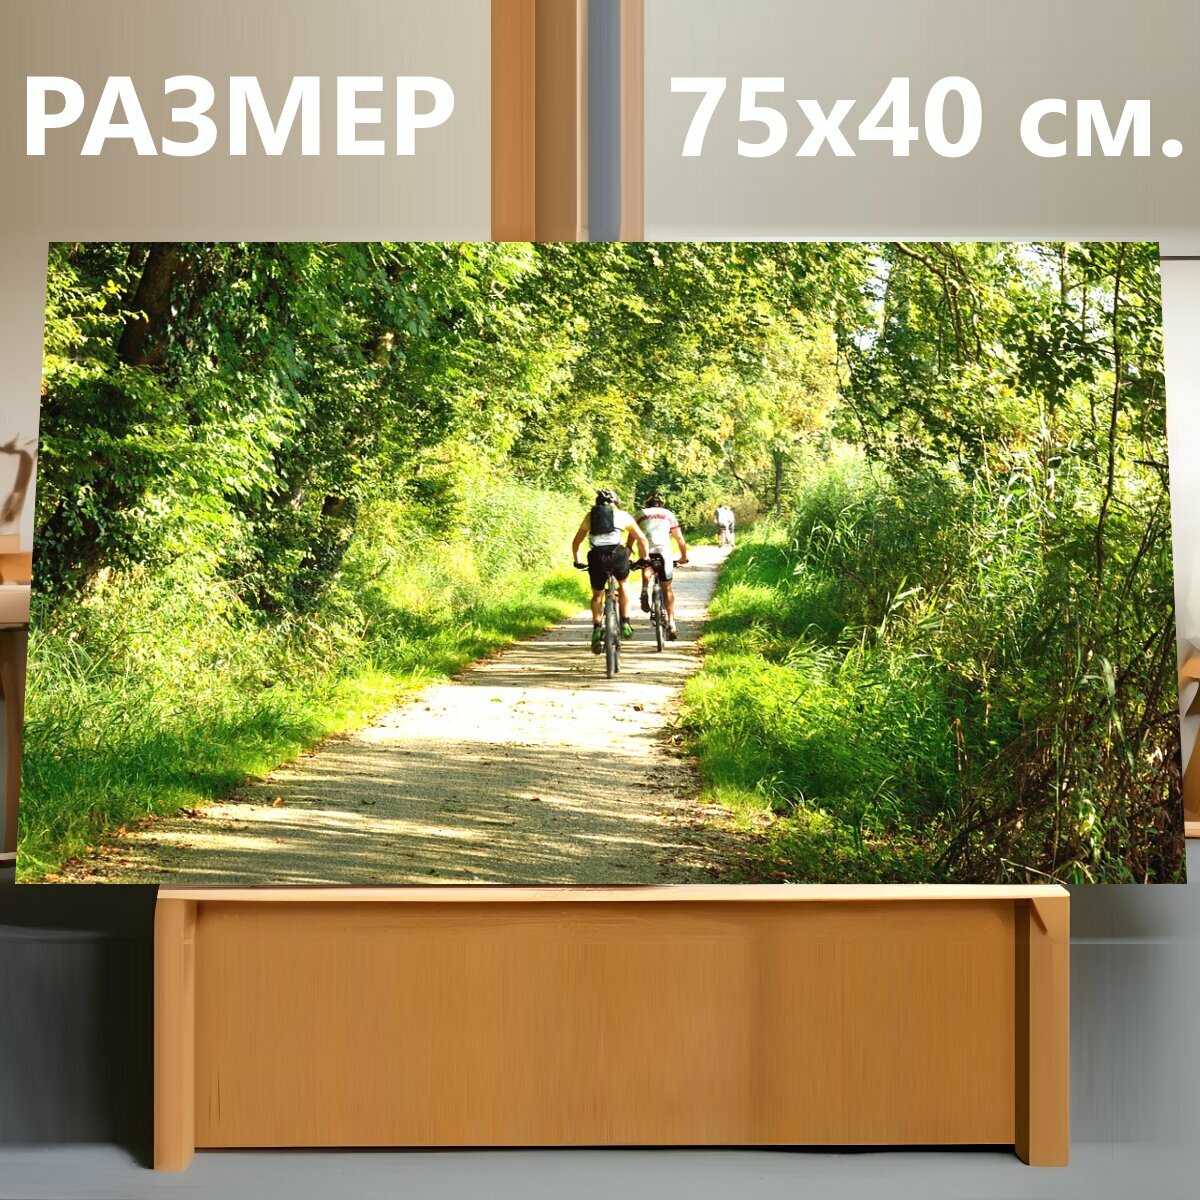 Картина на холсте "Кататься на велосипеде, велосипедист, лес" на подрамнике 75х40 см. для интерьера